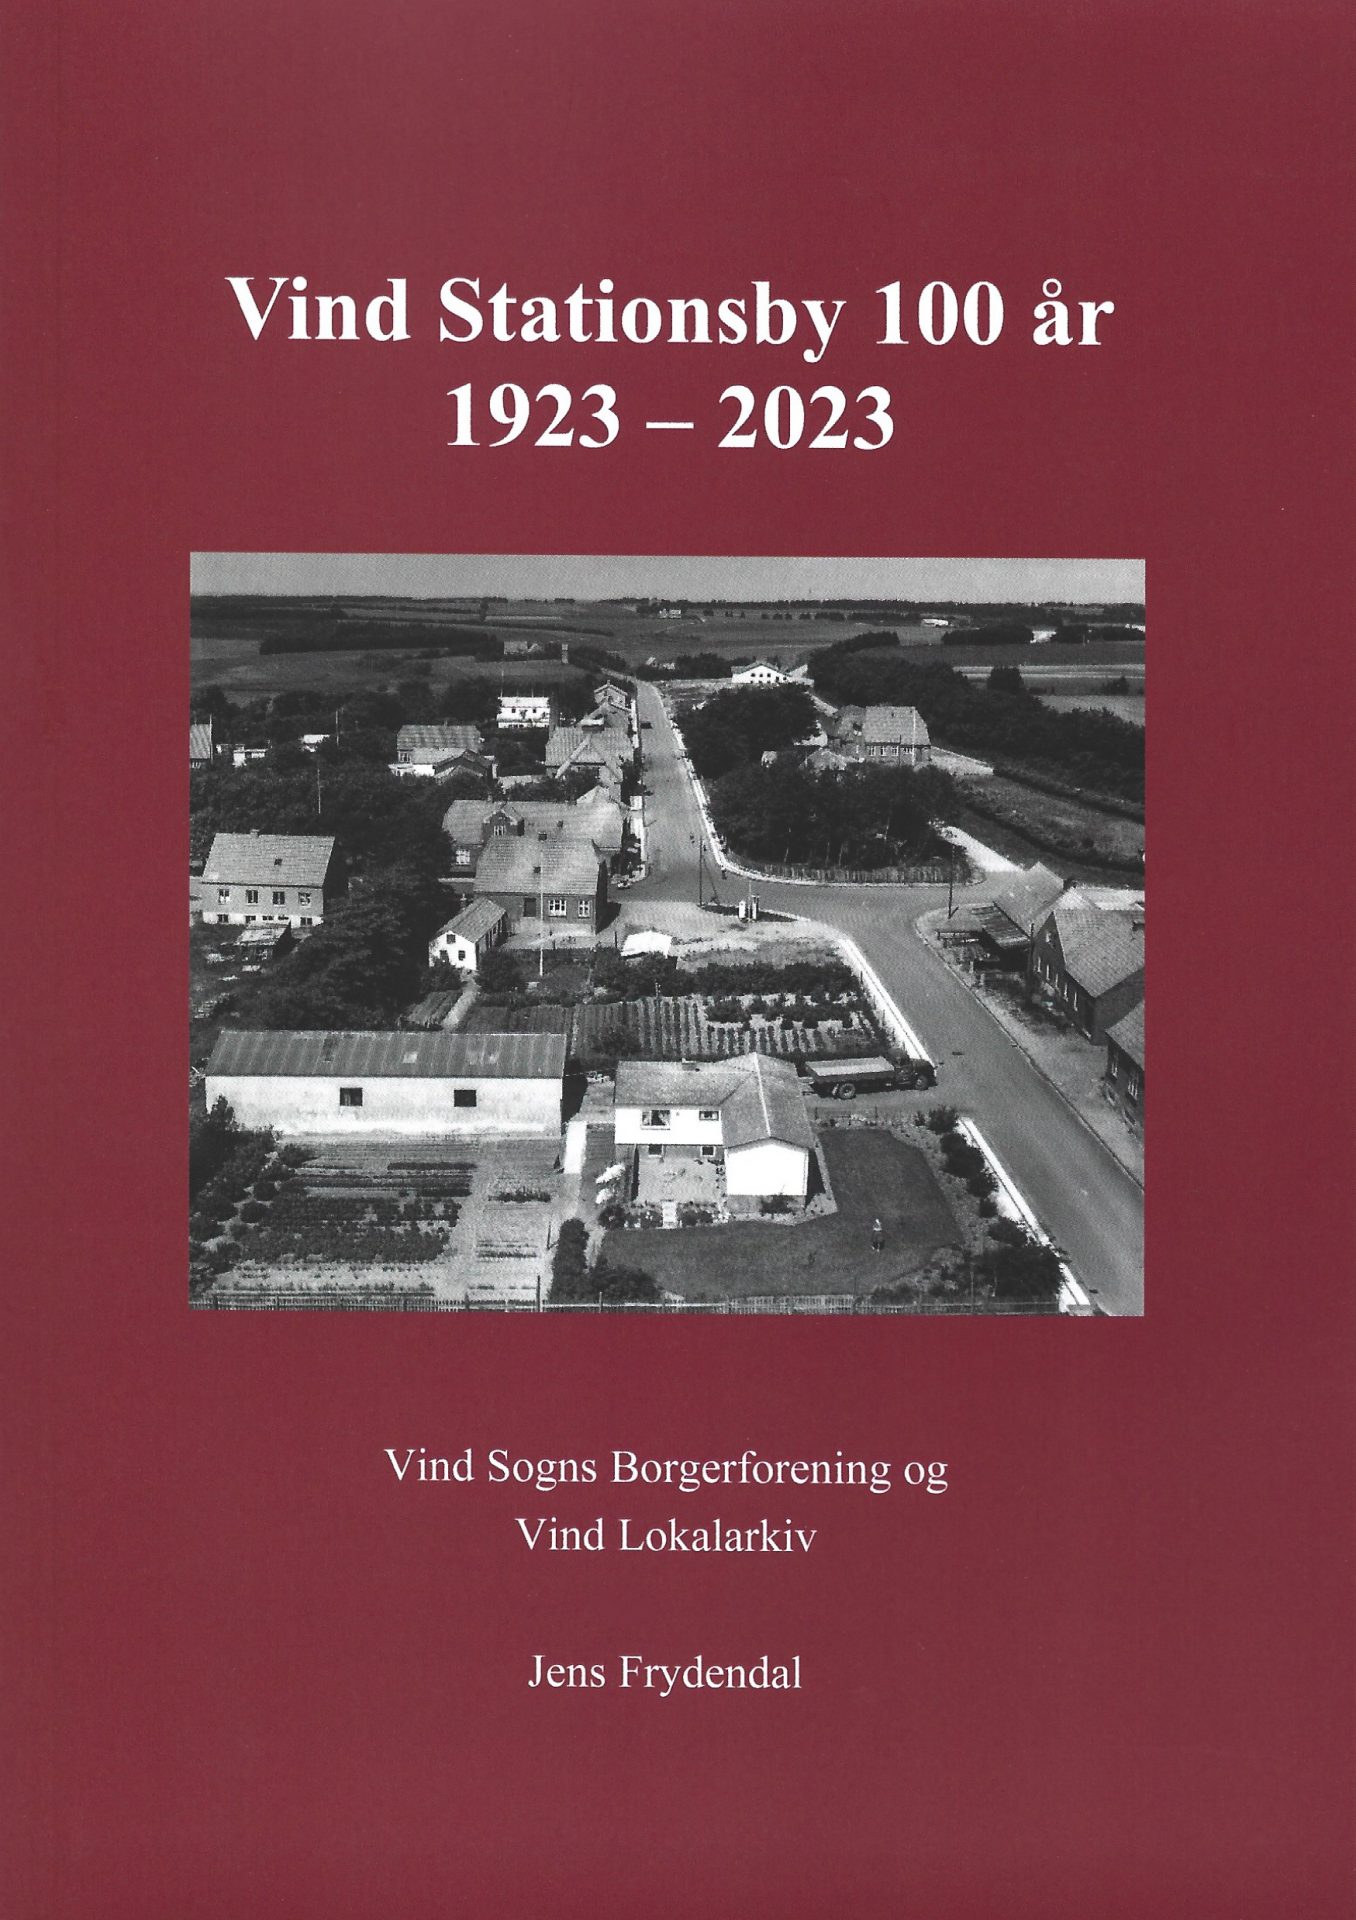 Jubilæumsbogen 'Vind Stationsby 100 år, 1923-2023'.